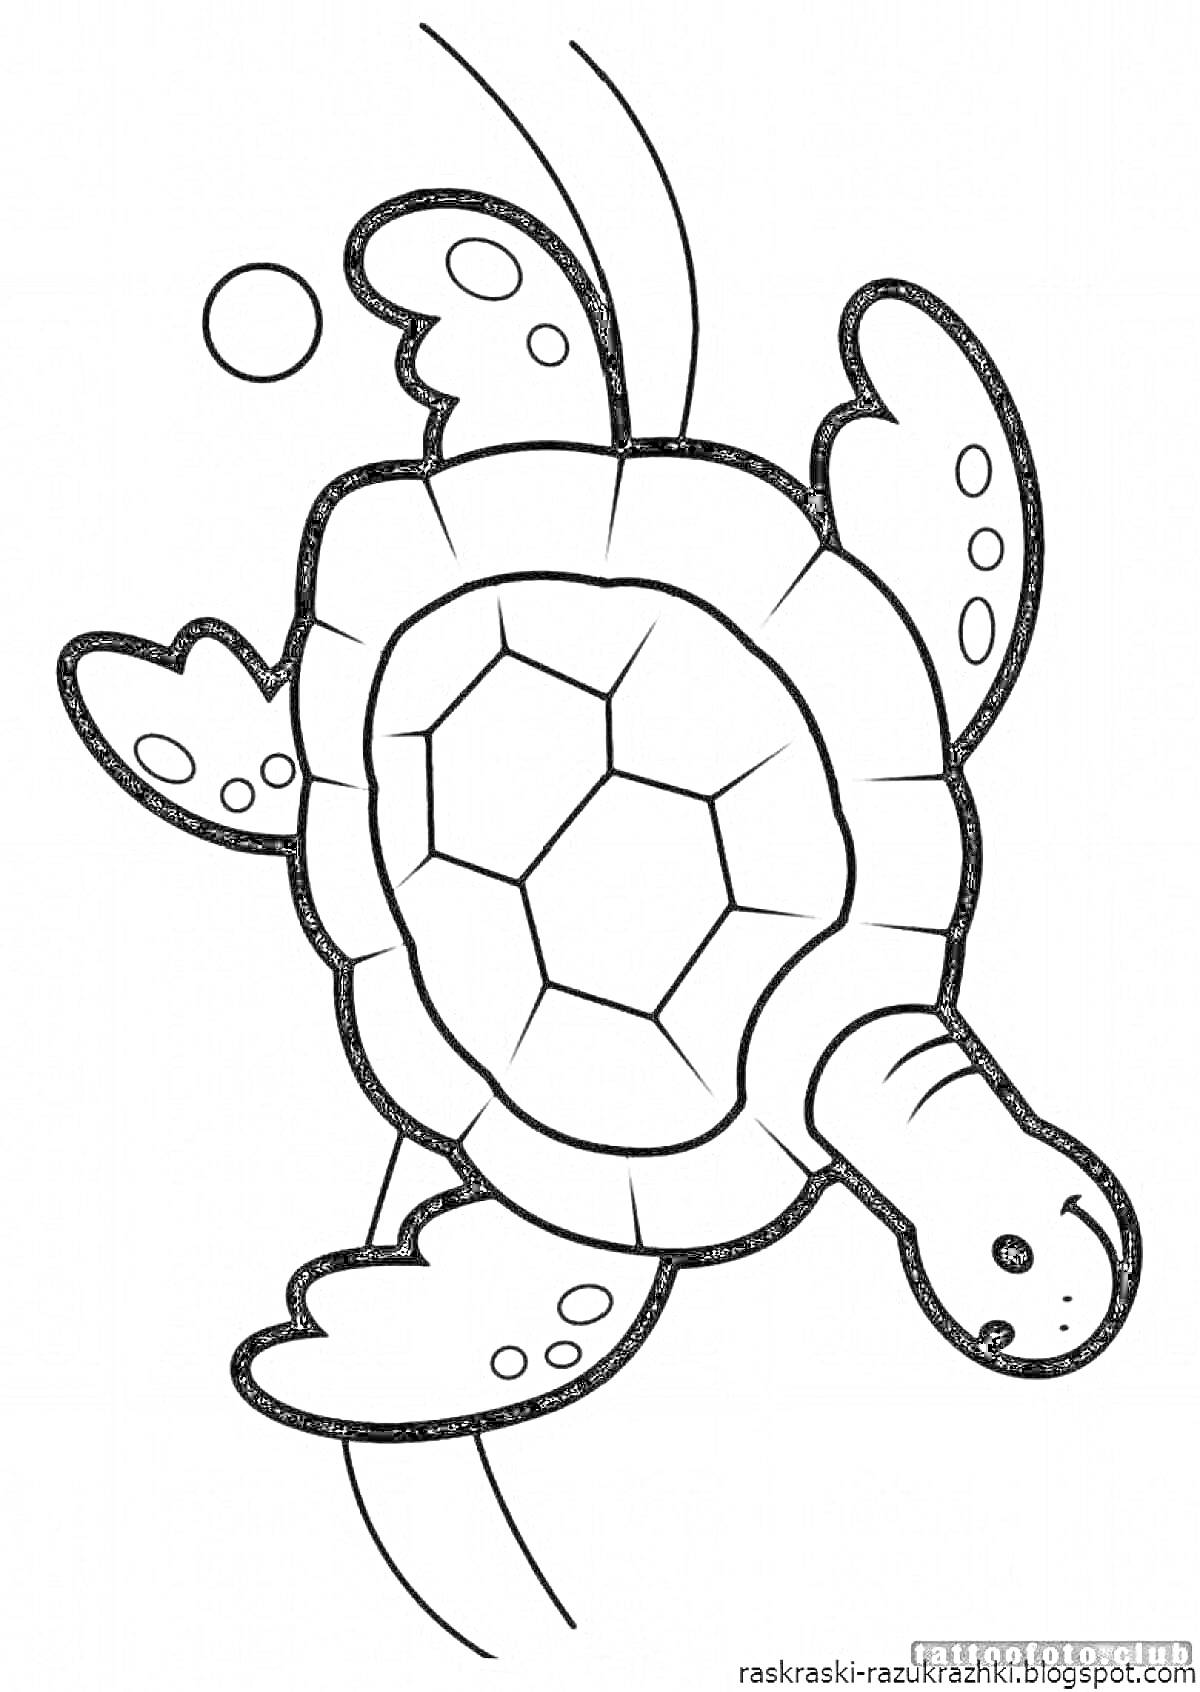 Раскраска Черепаха в воде с пузырьками